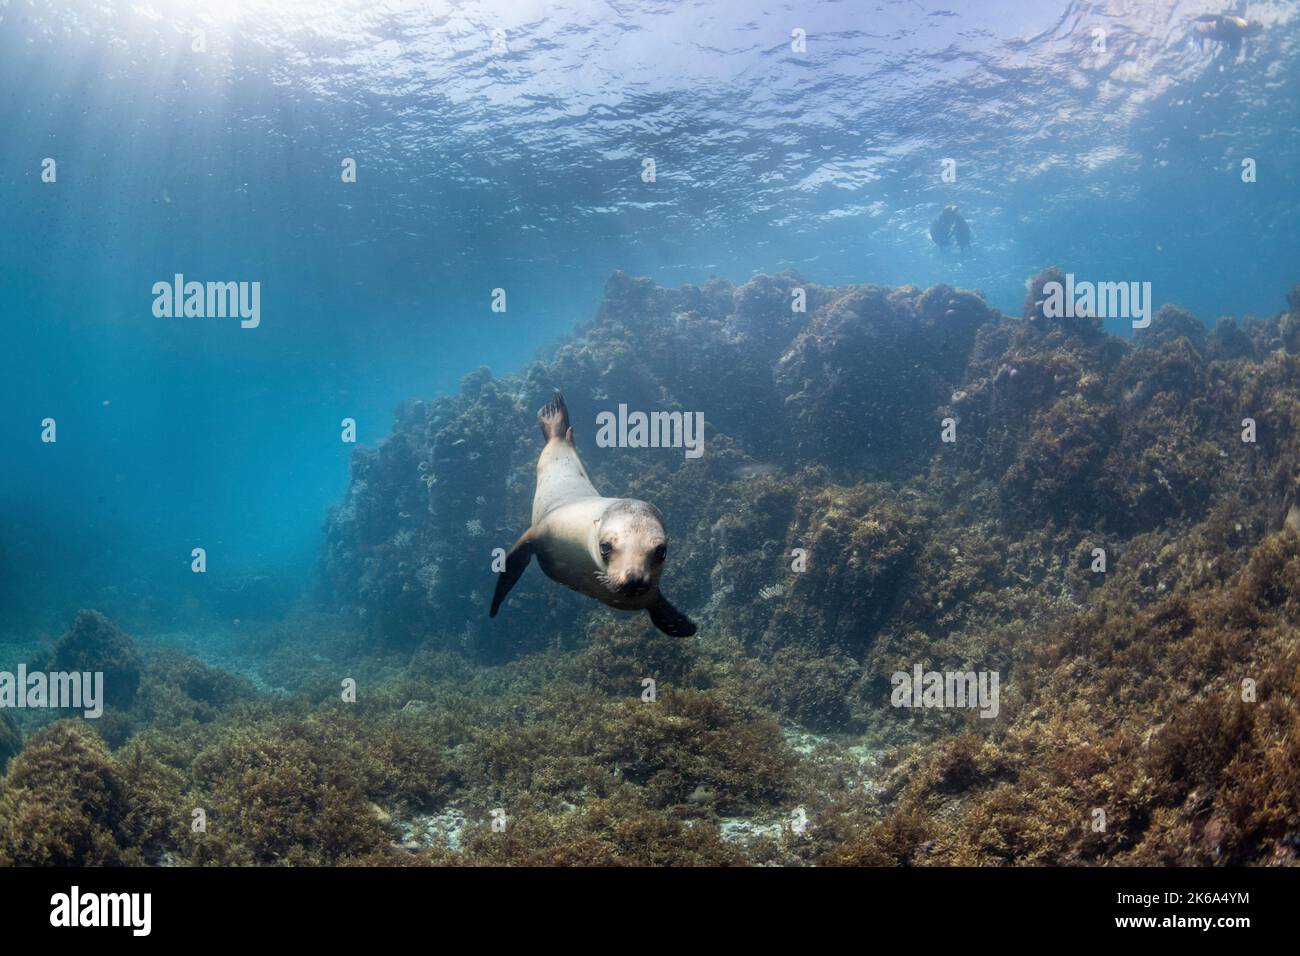 Ein kalifornischer Löwe schwimmt zum Meeresboden, während andere an der Oberfläche bleiben, Sea of Cortez. Stockfoto